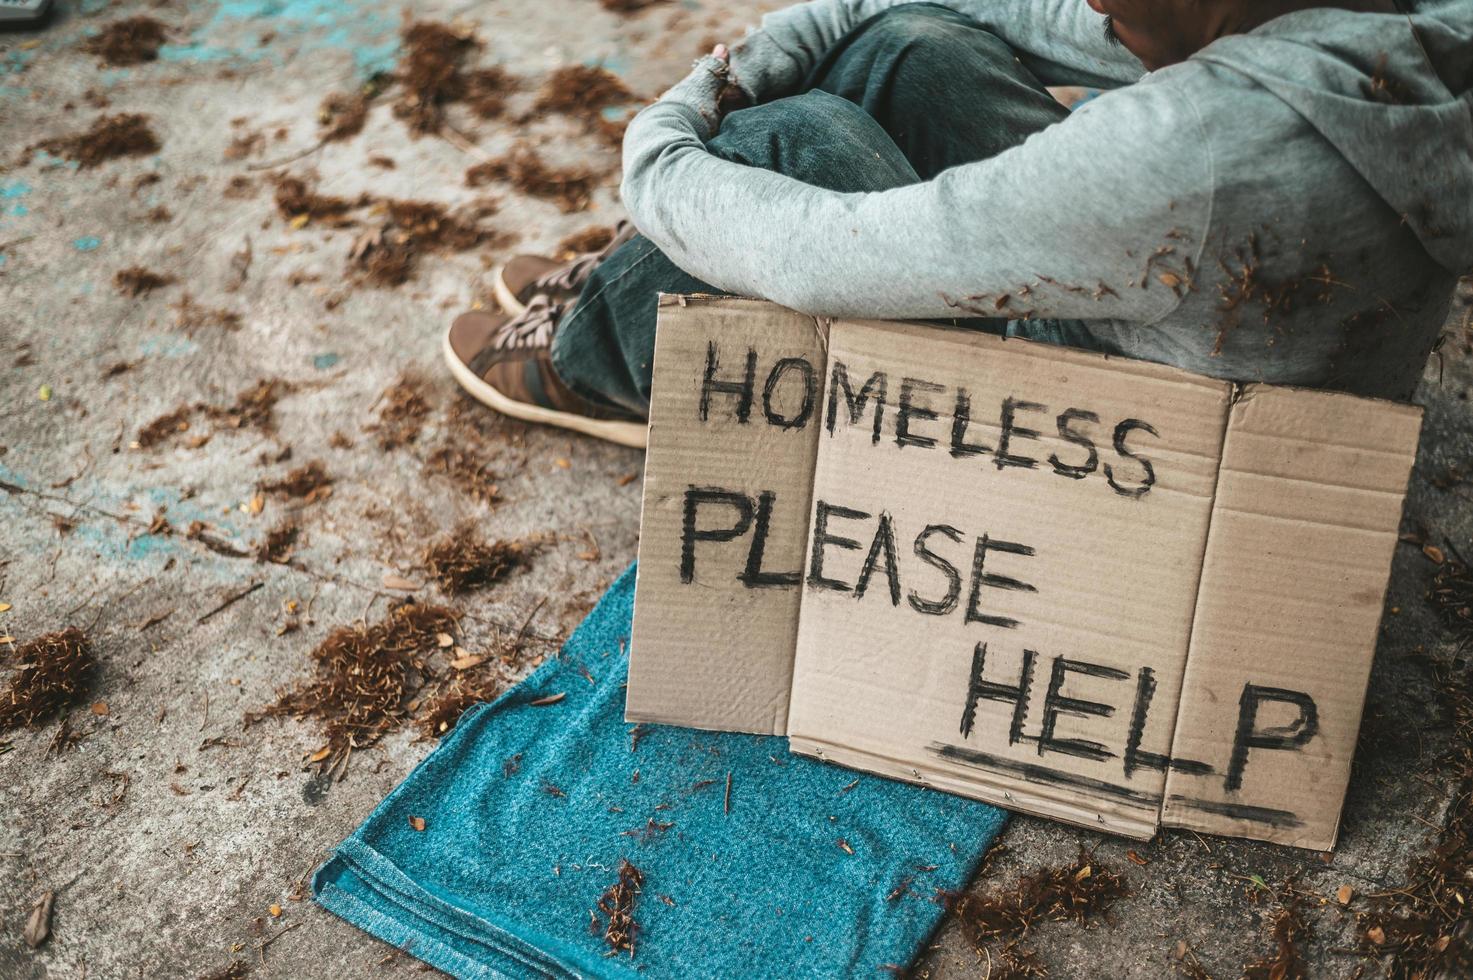 bedelaar slaapt op straat met berichten over daklozen, help alstublieft foto